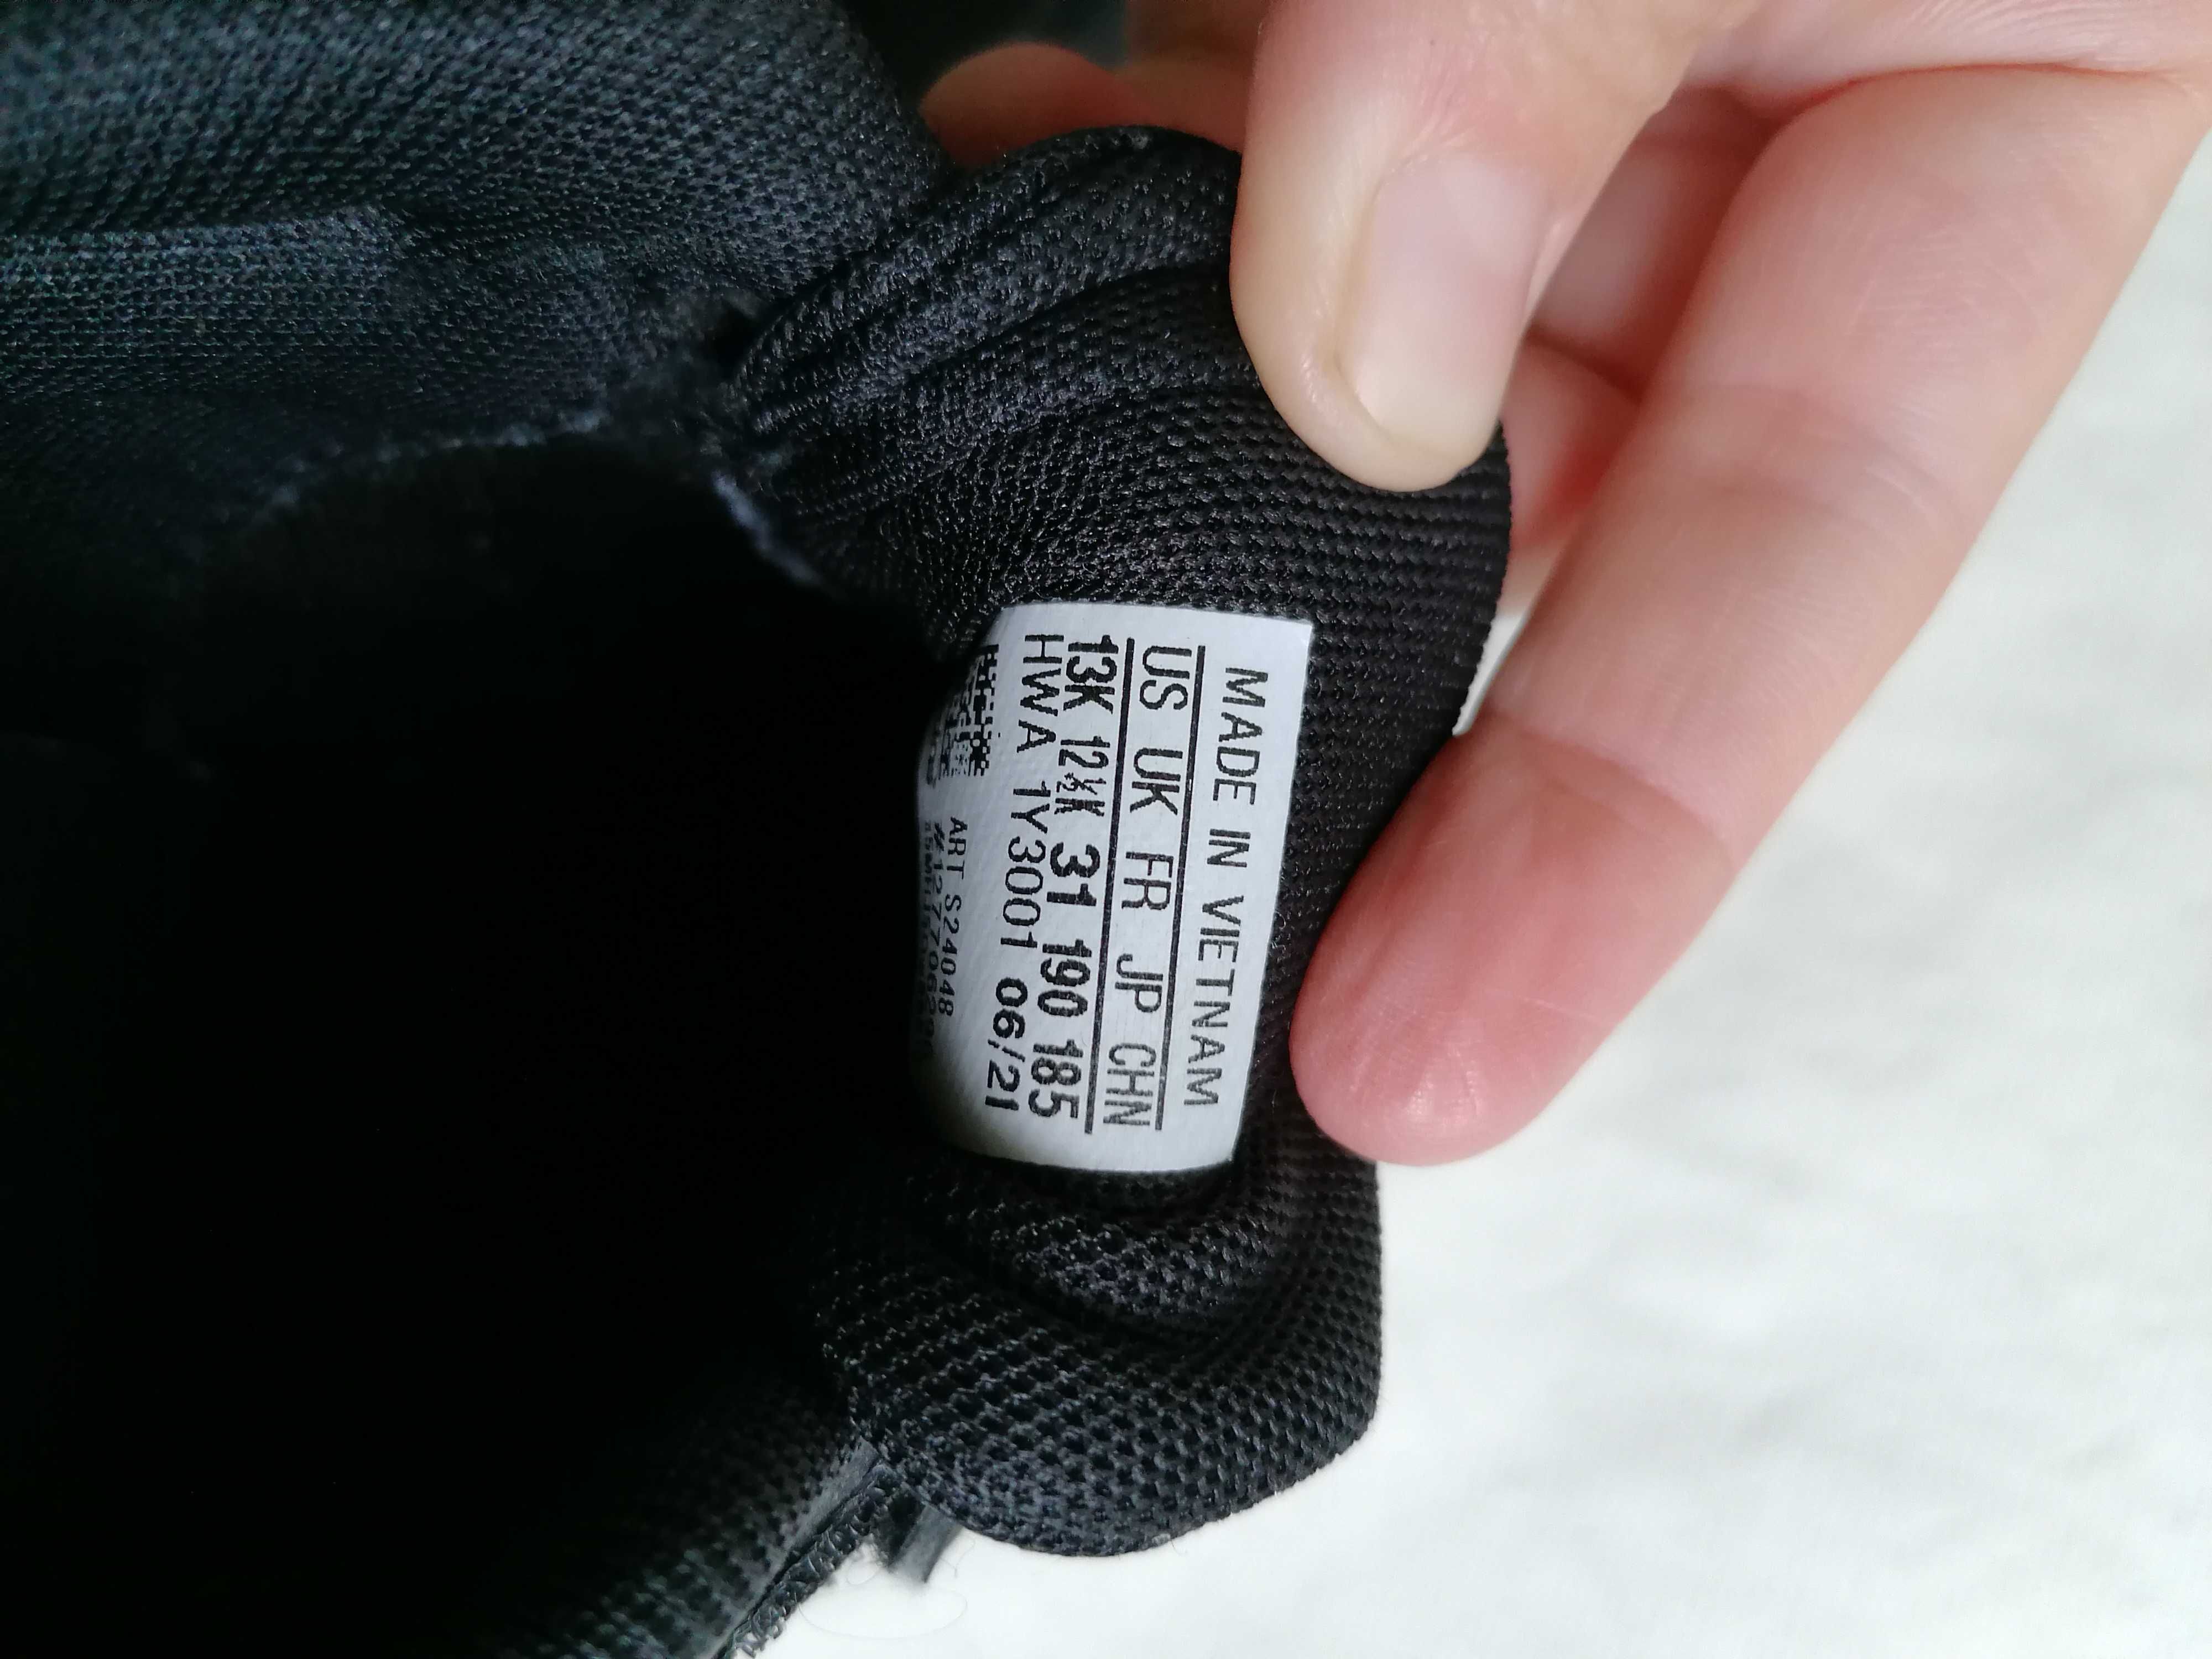 Adidasy adidas czarne chłopięce rozmiar 31